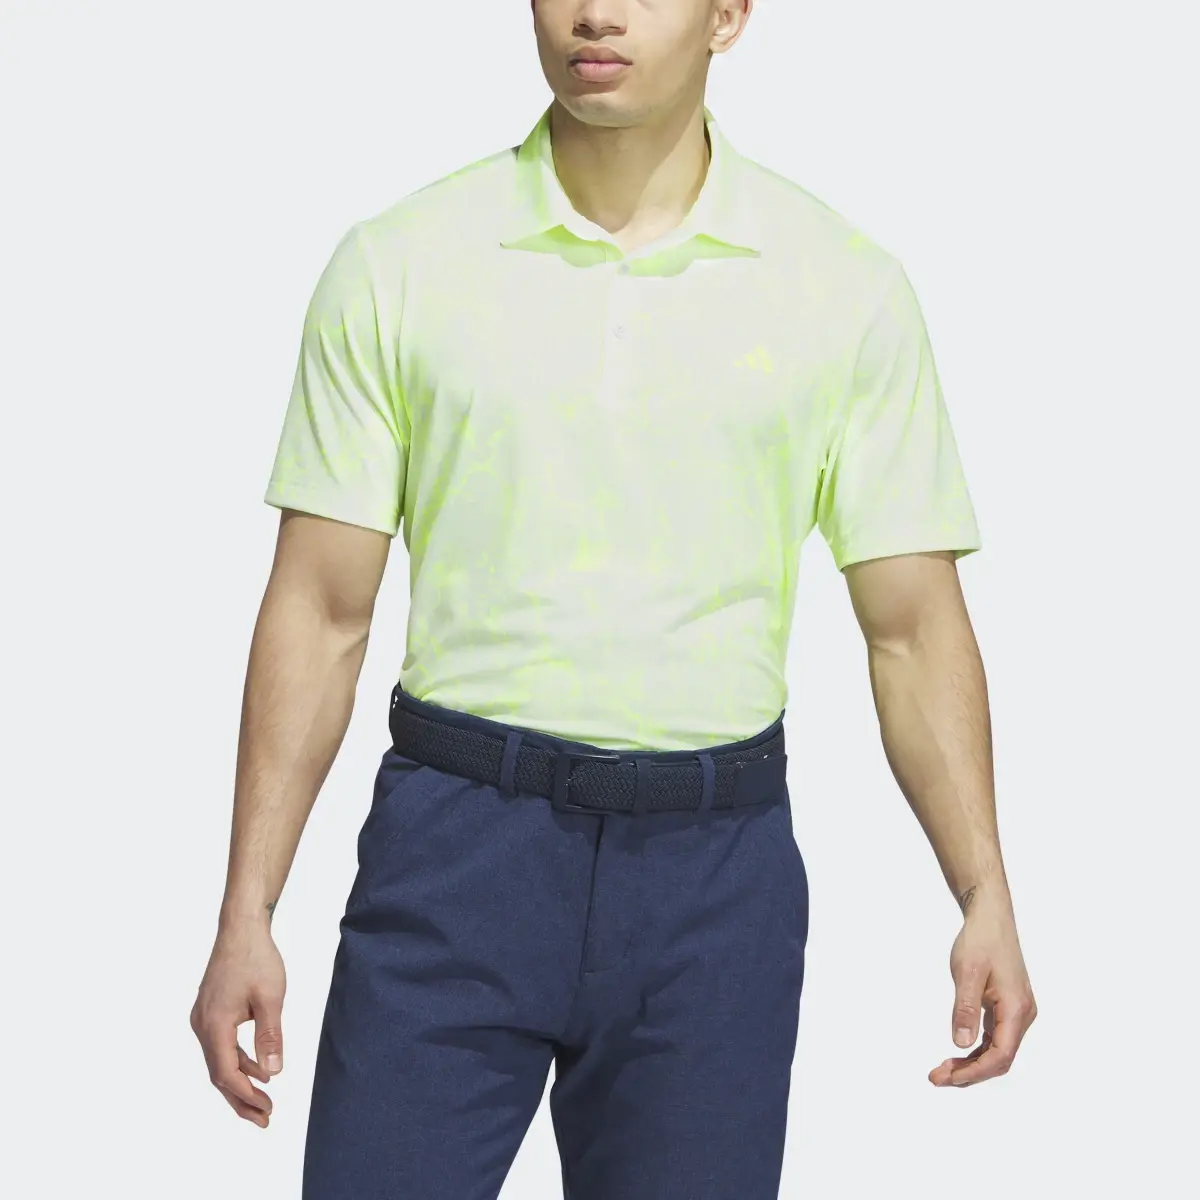 Adidas Ultimate365 Print Golf Polo Shirt. 1